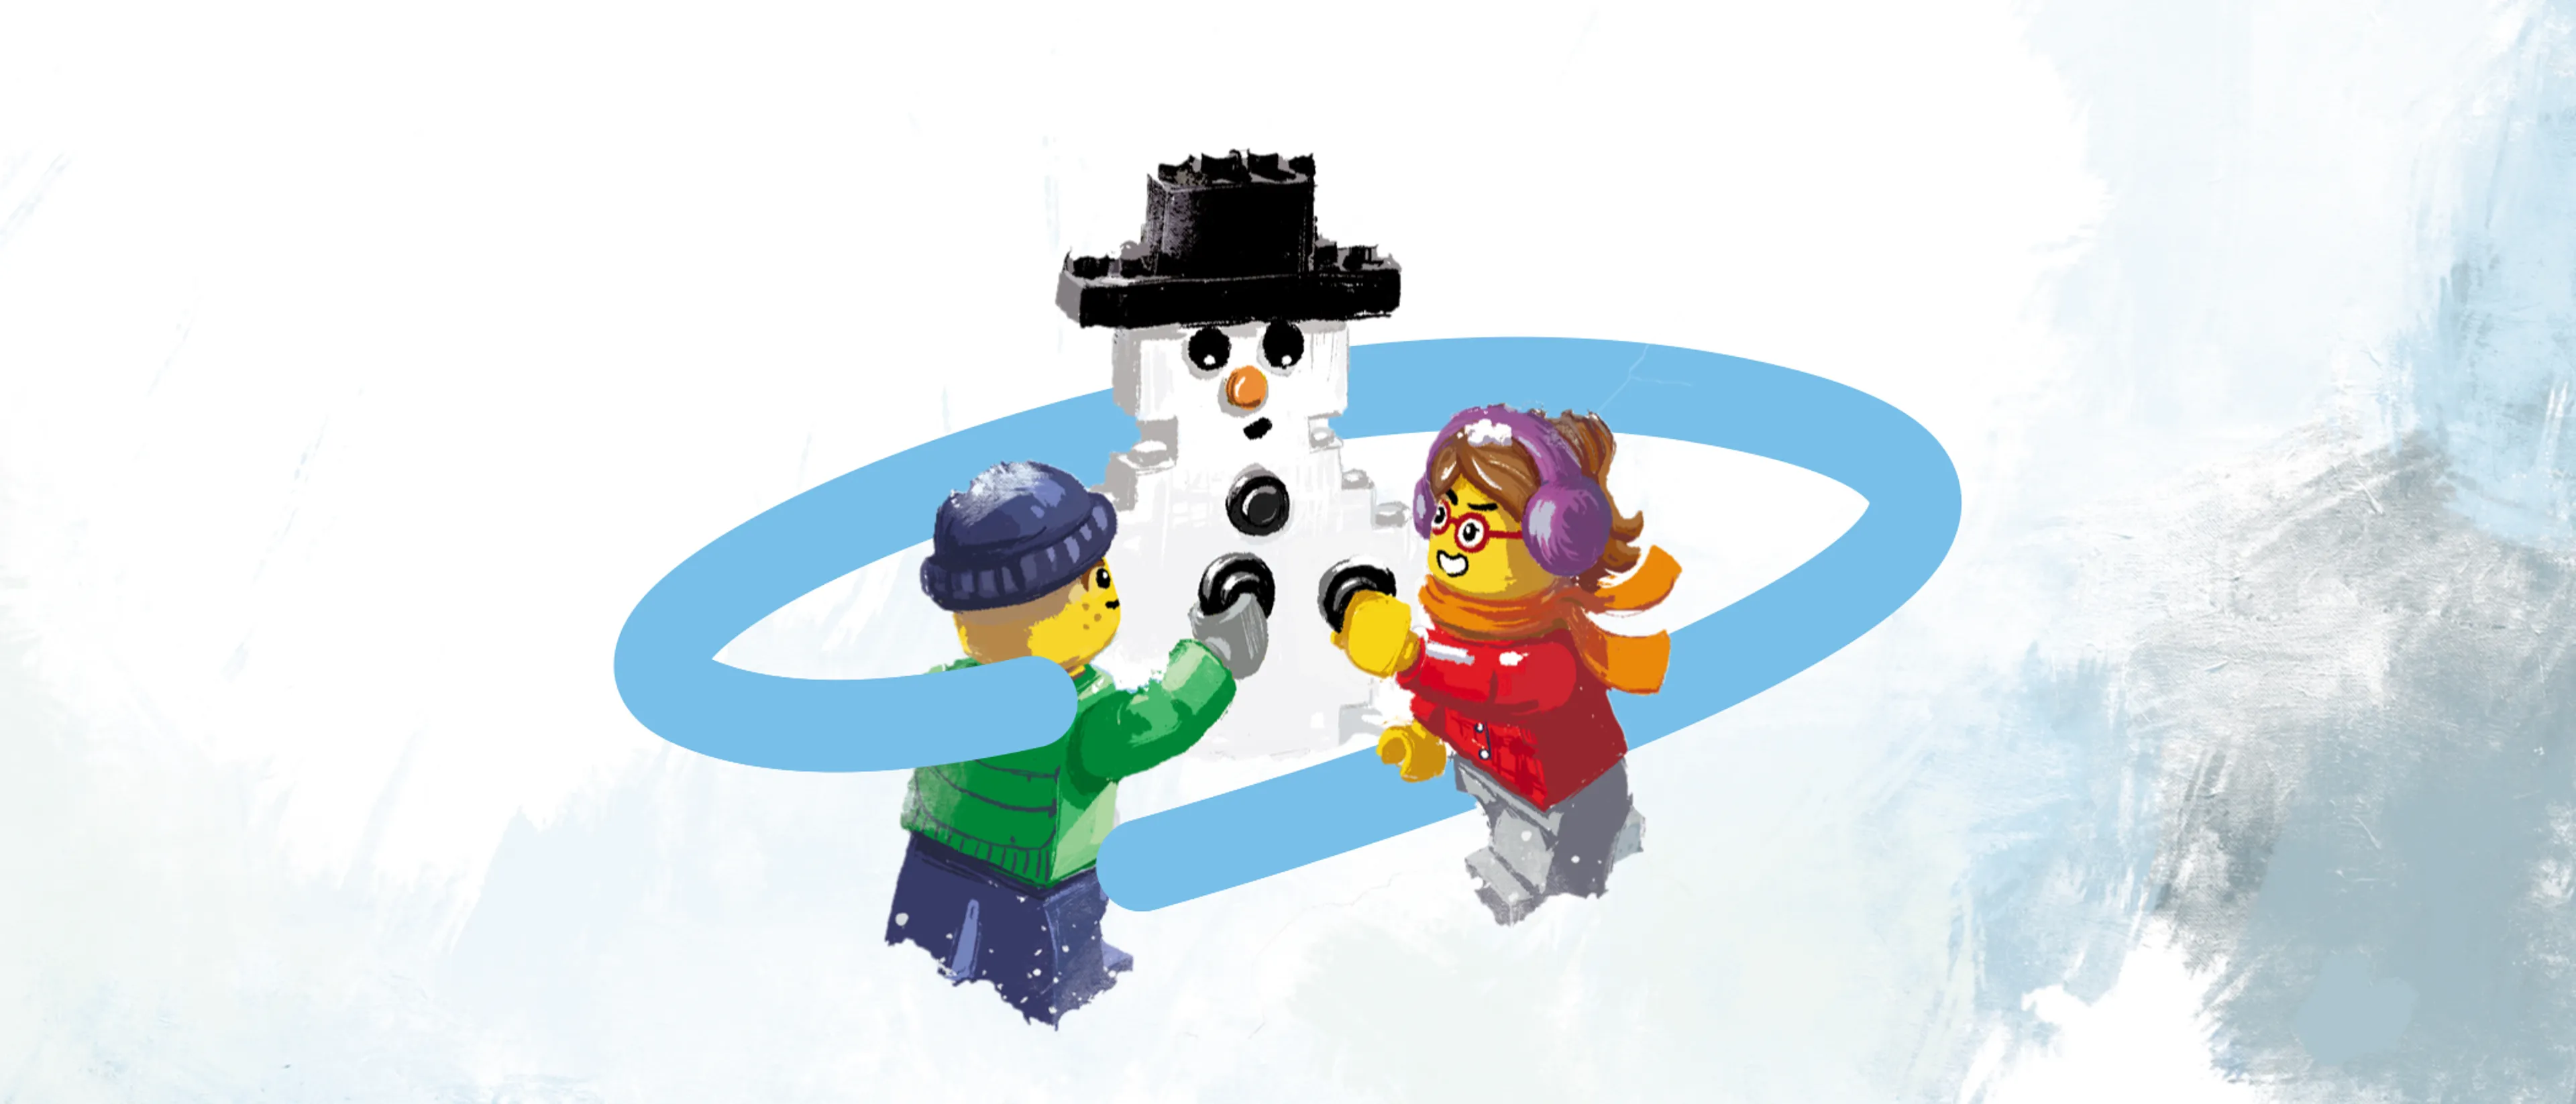 Minifigure friends building a minifigure snowman